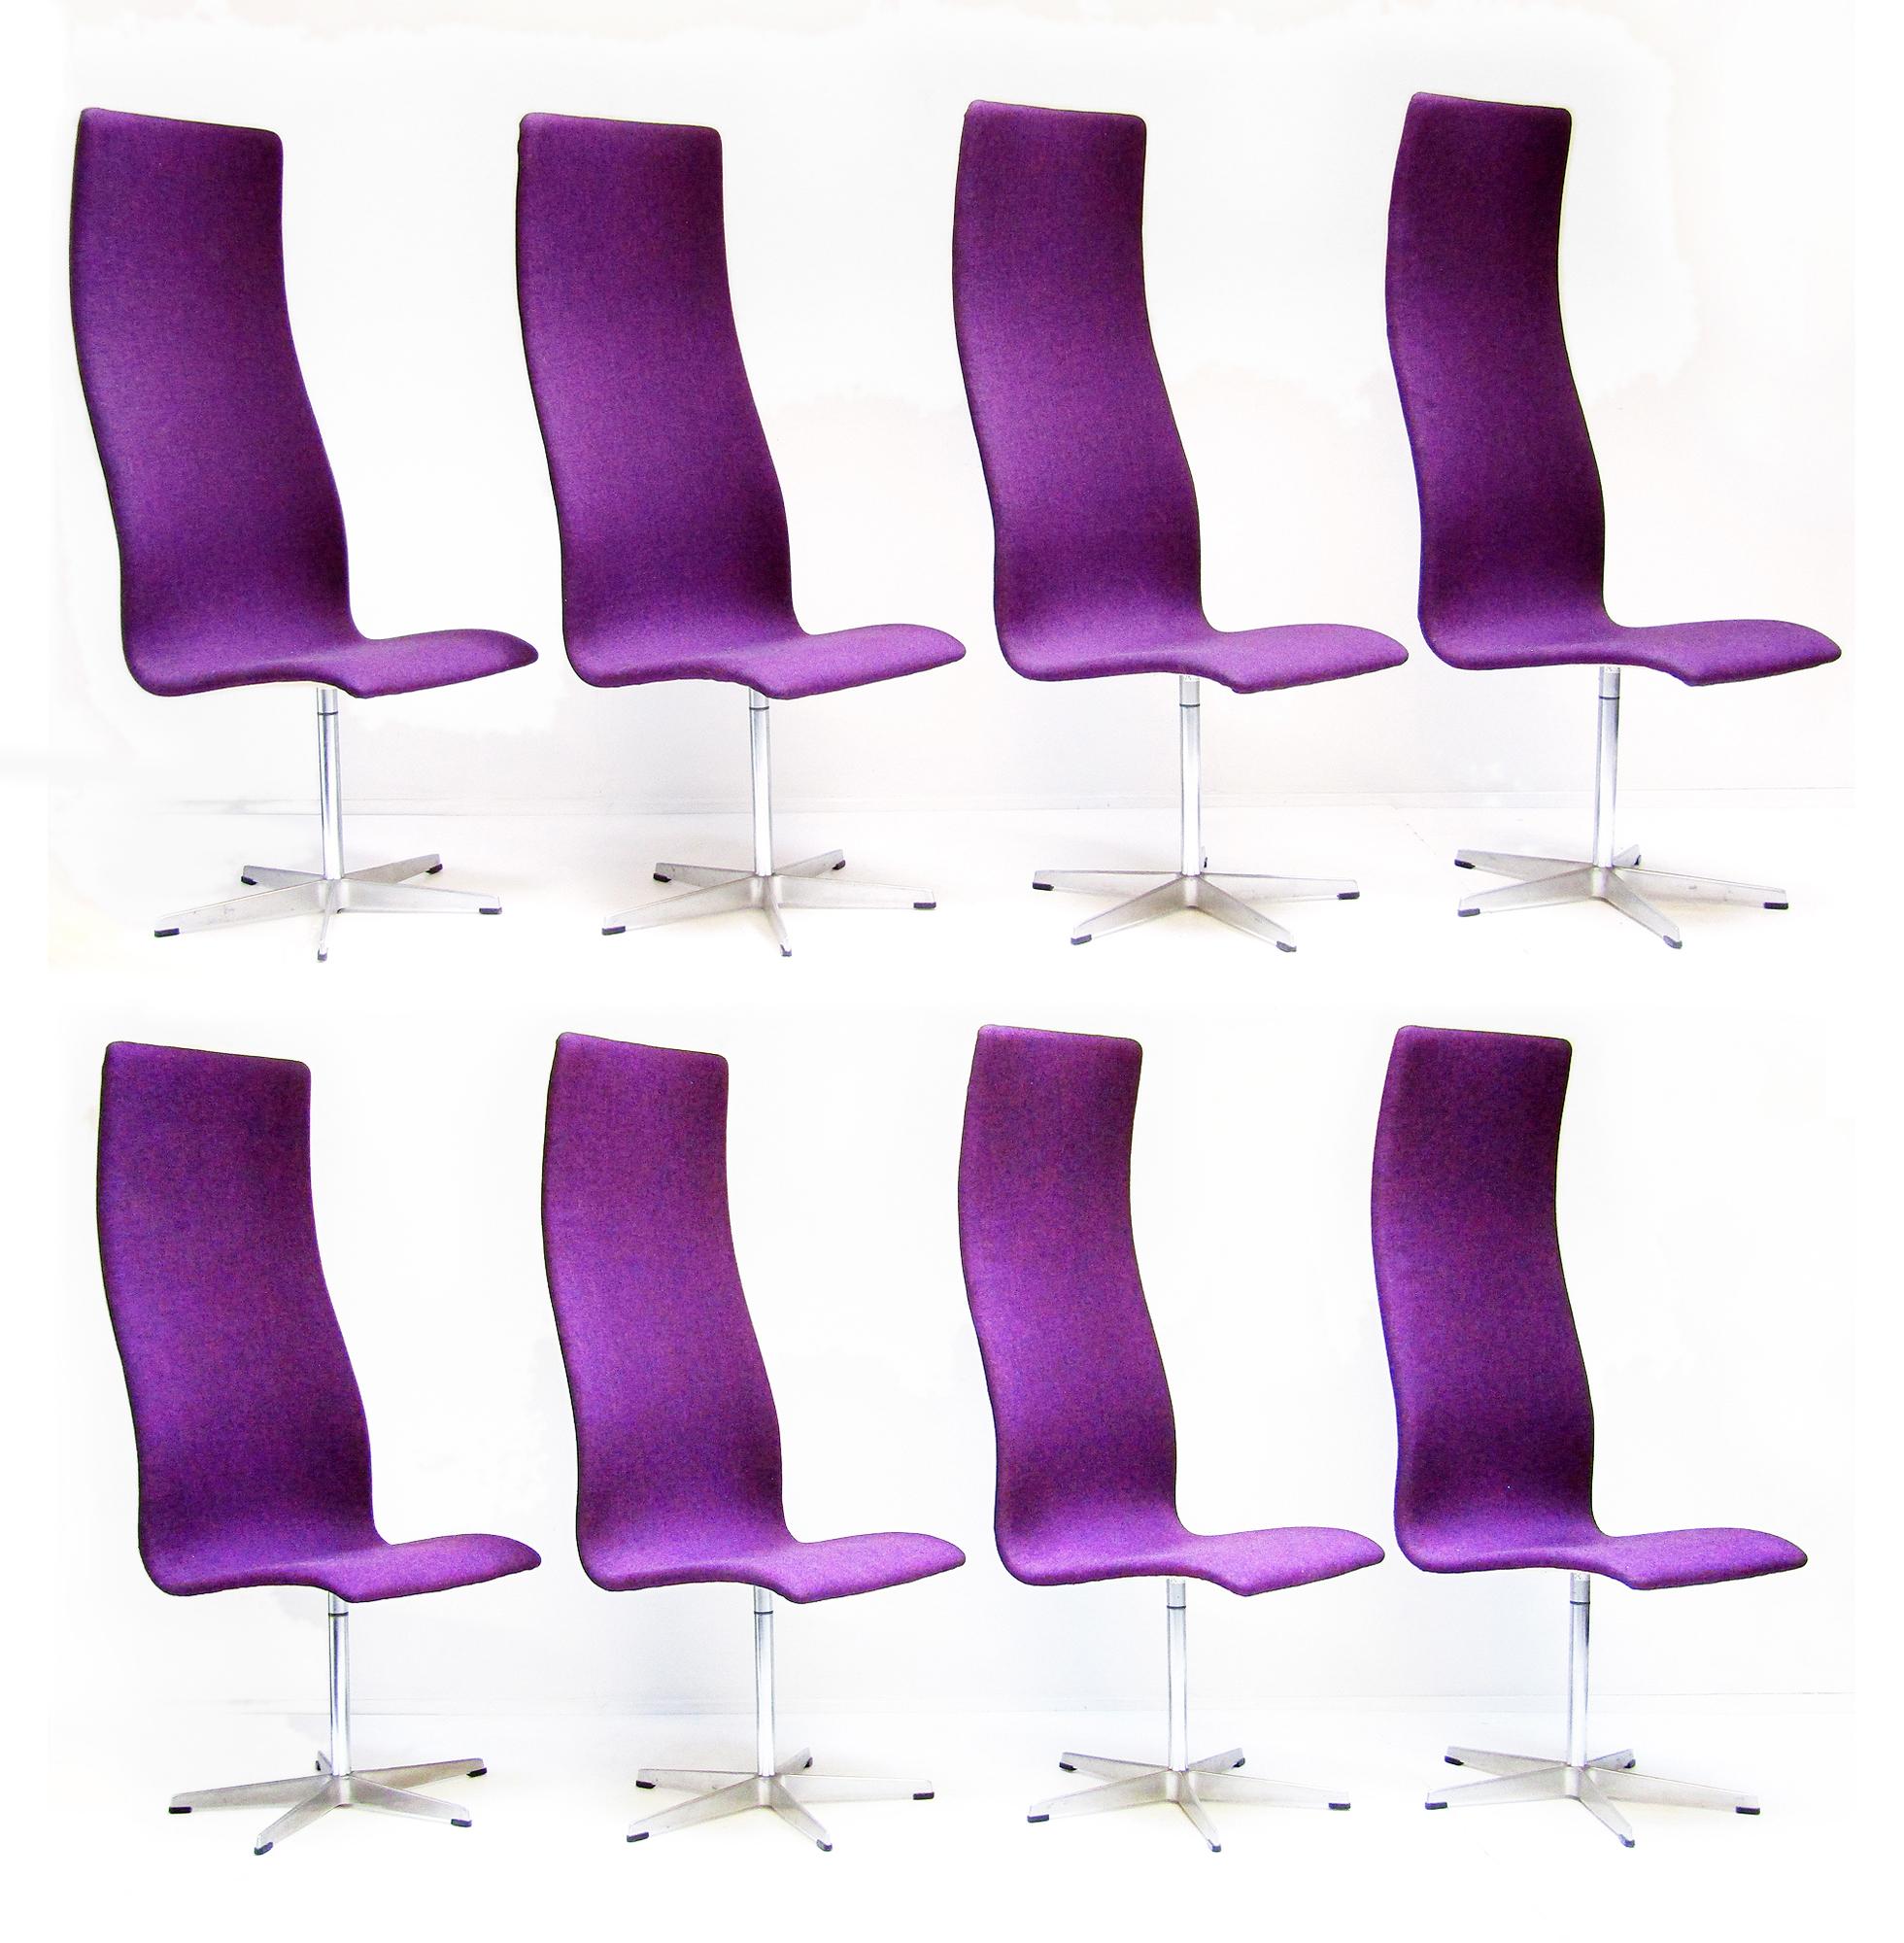 Ein Satz von acht Oxford-Stühlen mit hoher Rückenlehne aus den 1960er Jahren von Arne Jacobsen für Fritz Hansen.

Dieses klassisch-modernistische Design wurde in den frühen 1960er Jahren für das St. Catherine's College der Universität Oxford für